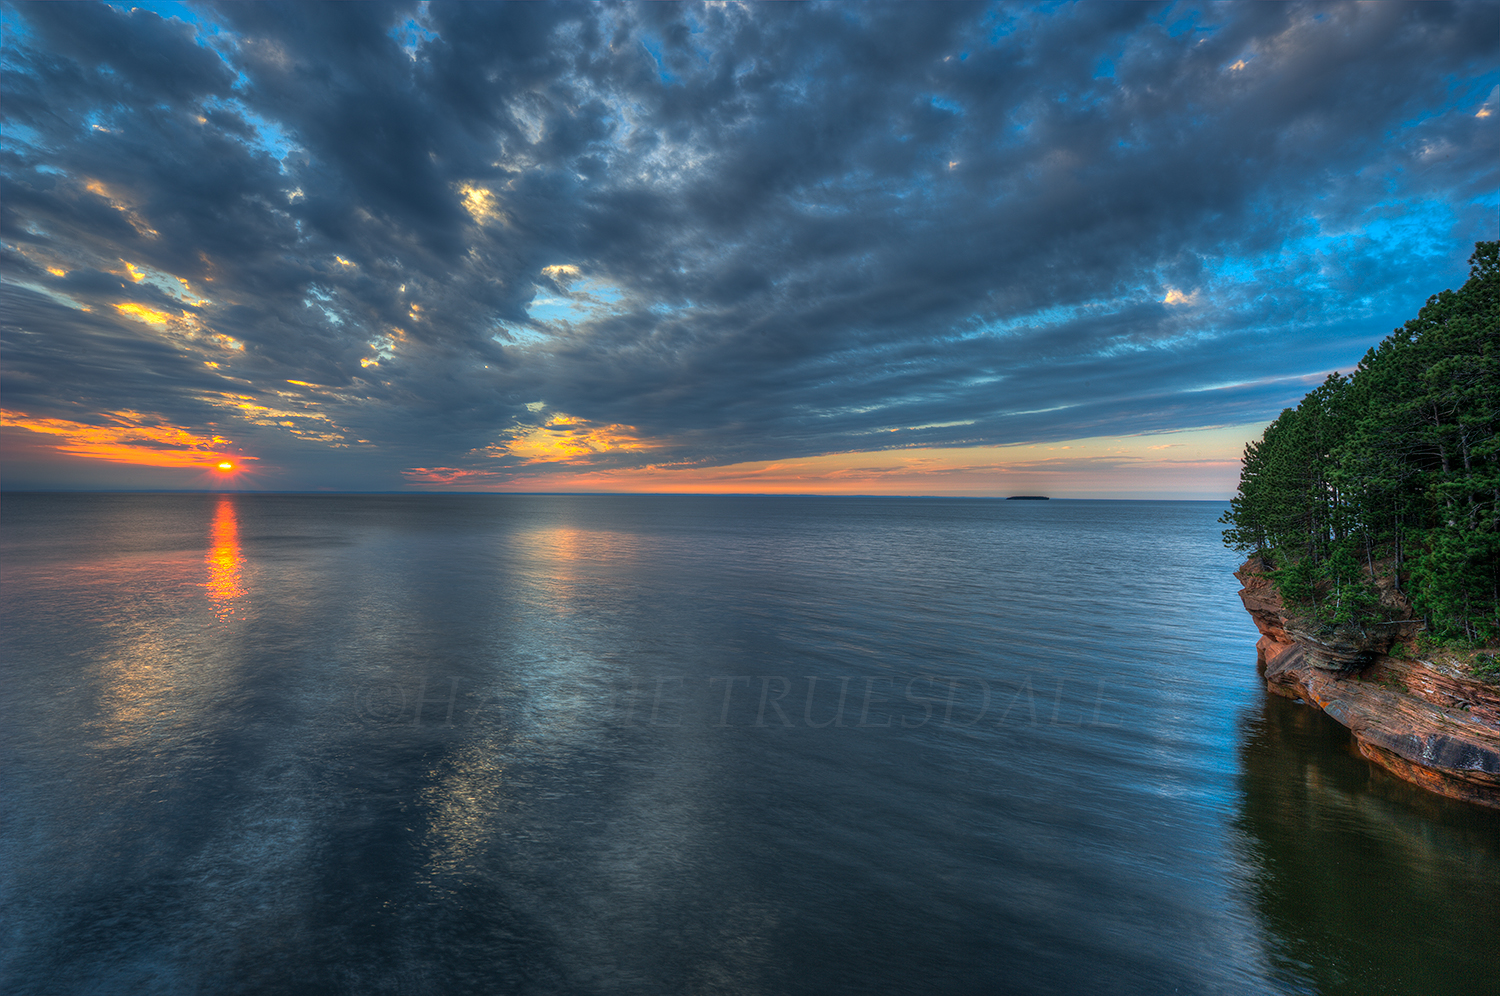  WI#032 "Sunset,&nbsp; Mawikwe Bay, Apostle Islands, Lake Superior"  